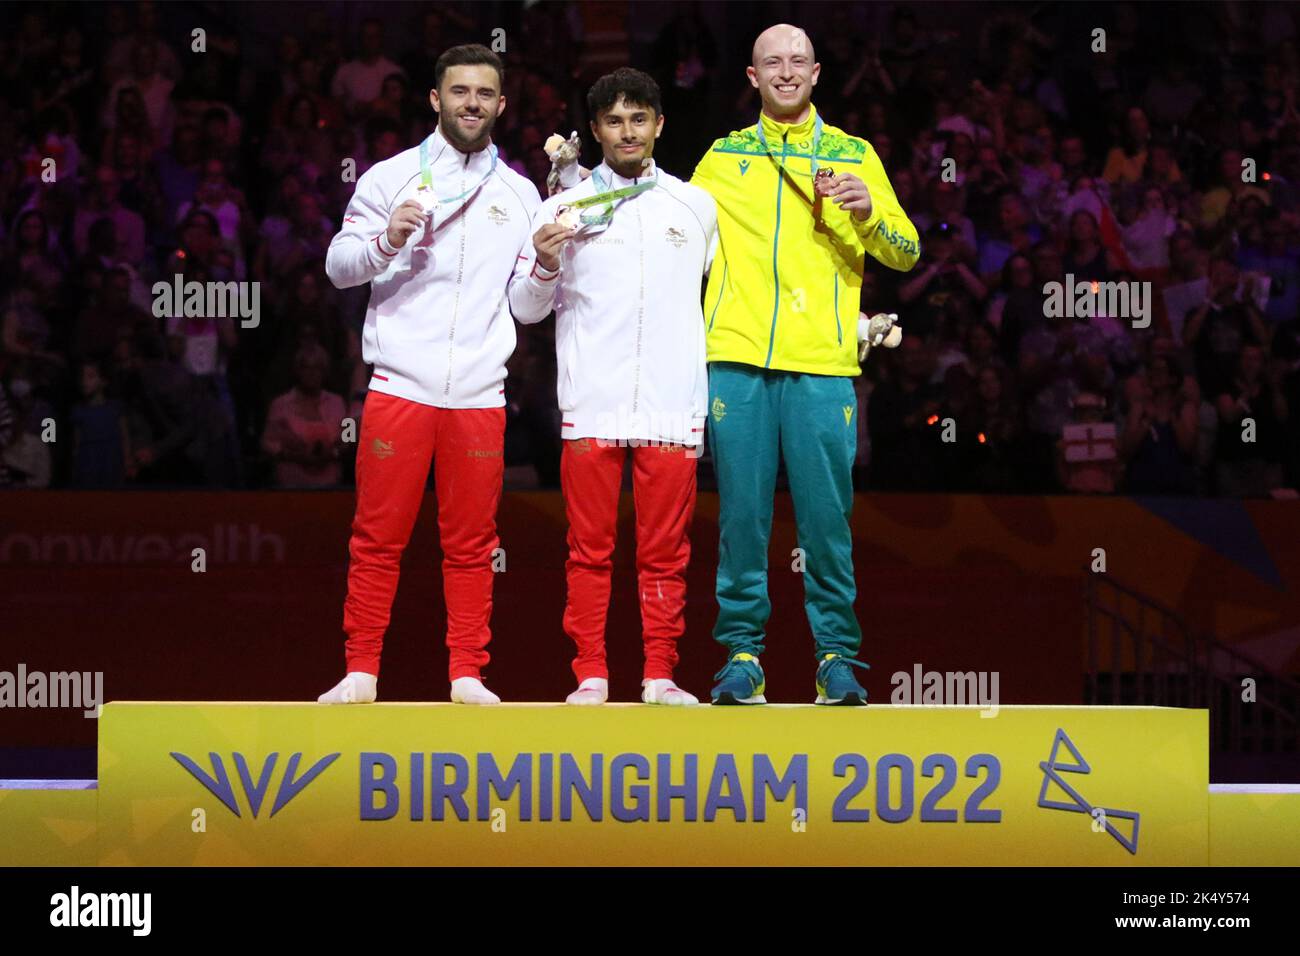 (De gauche à droite) Giarnni REGINI-MORAN d'Angleterre (argent), Jake JARMAN d'Angleterre (or), James BACUETI d'Australie (bronze) dans le coffre-fort pour hommes - finale aux Jeux du Commonwealth 2022 dans l'arène, Birmingham. Banque D'Images